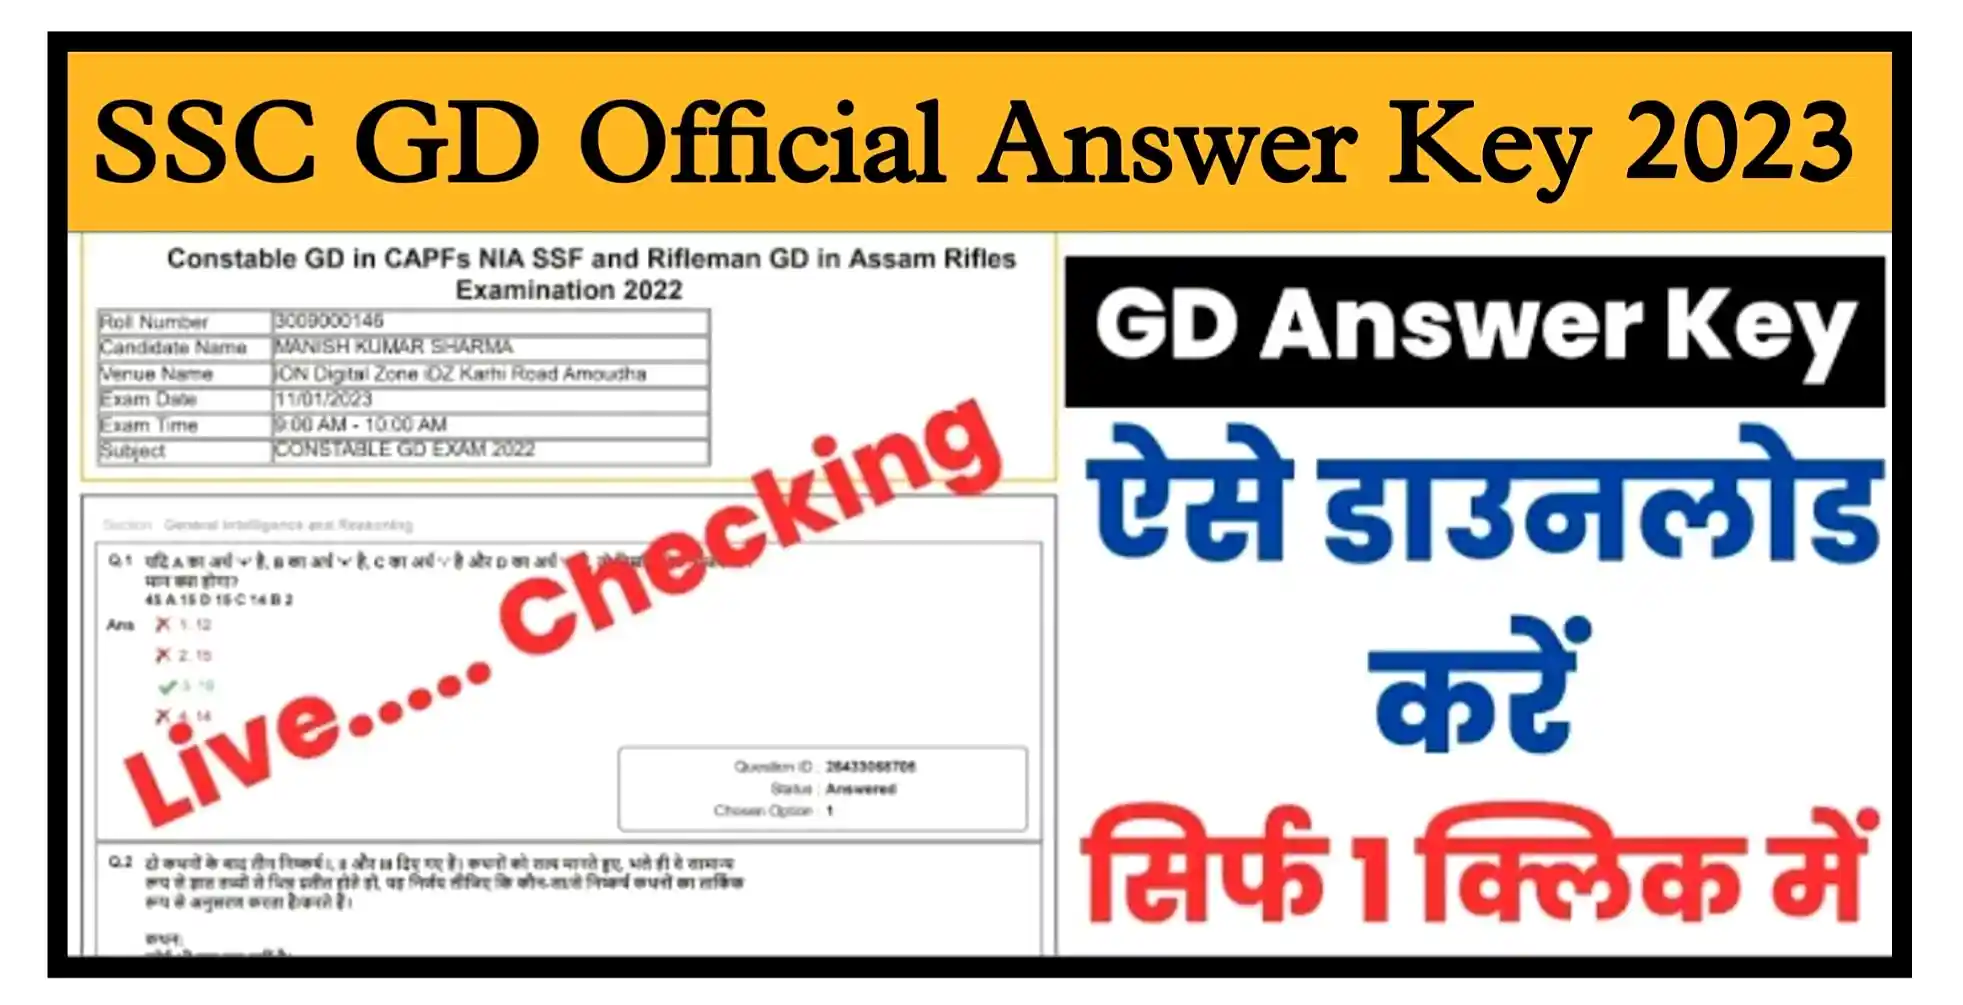 SSC GD Constable Answer Key 2023 एसएससी जीडी कांस्टेबल ऑफिशल आंसर की जारी, यहां से डाउनलोड करें